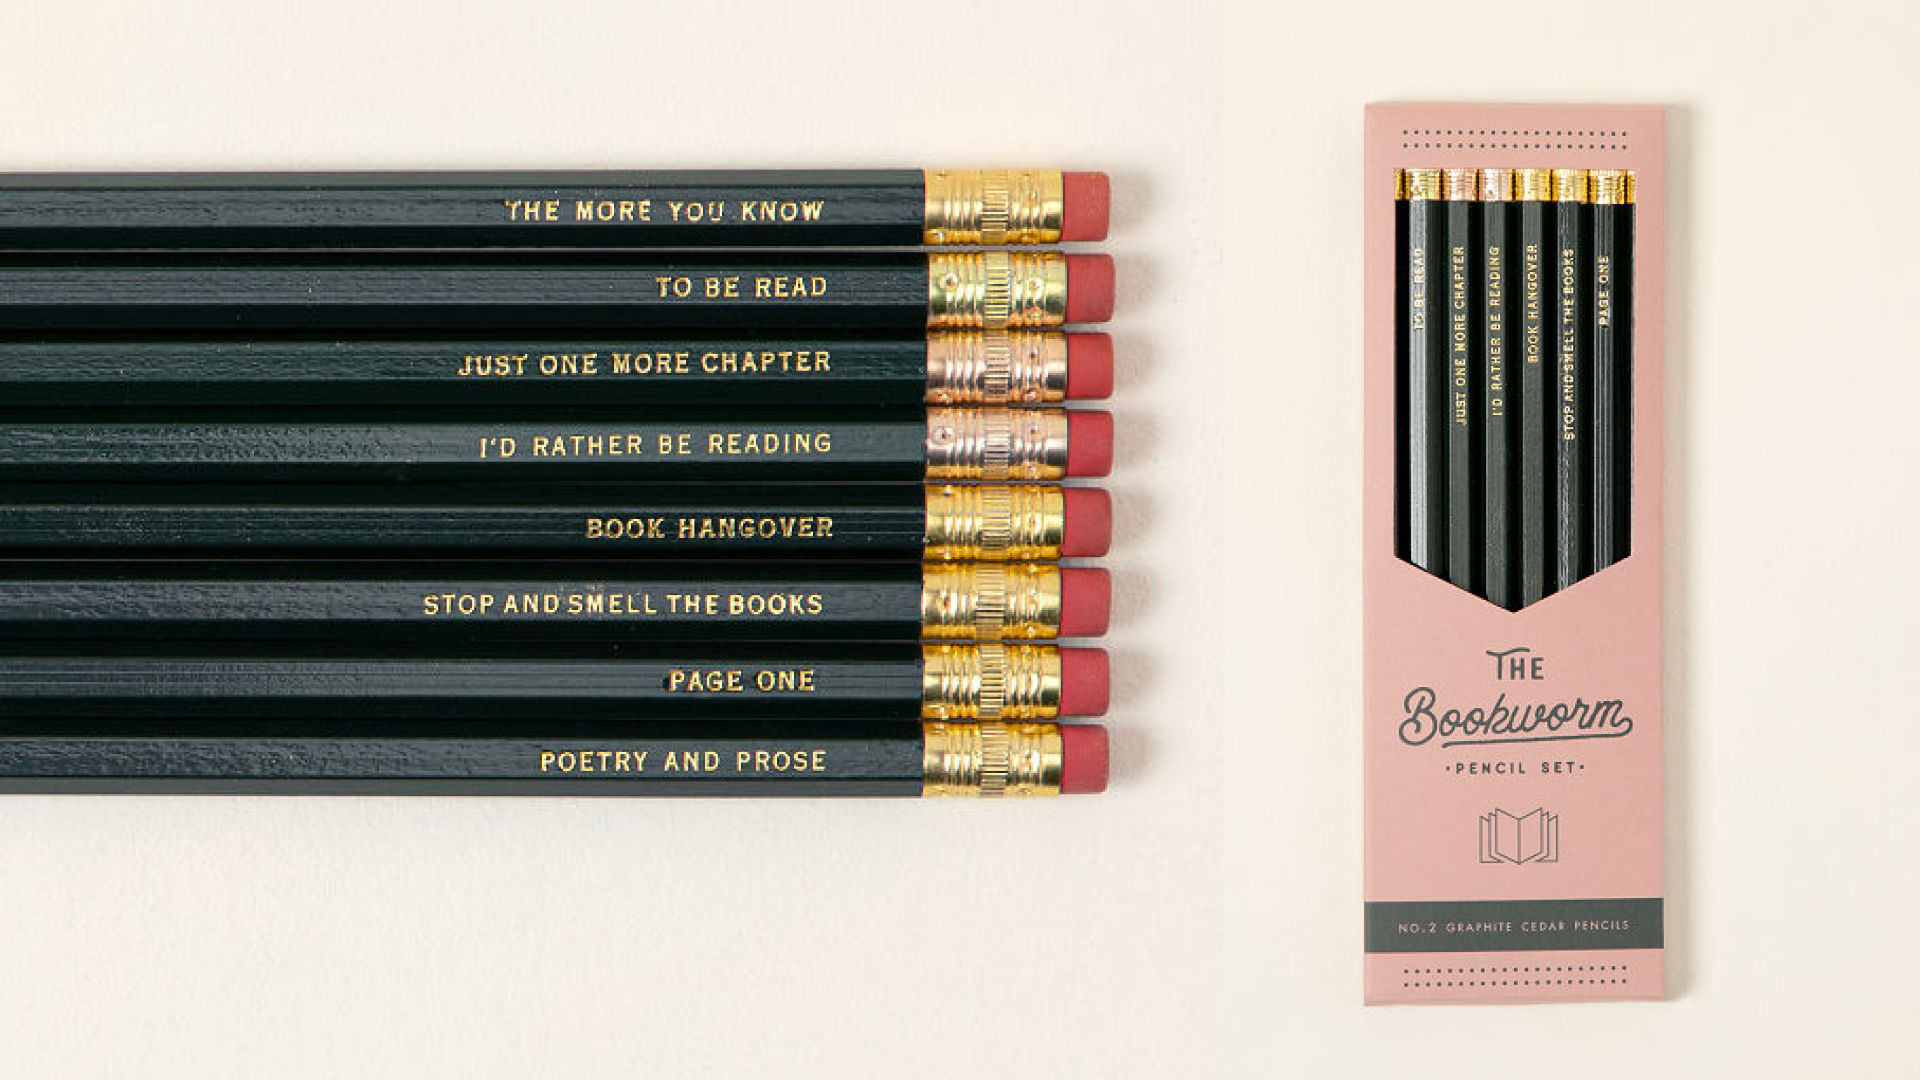 A pencil set 